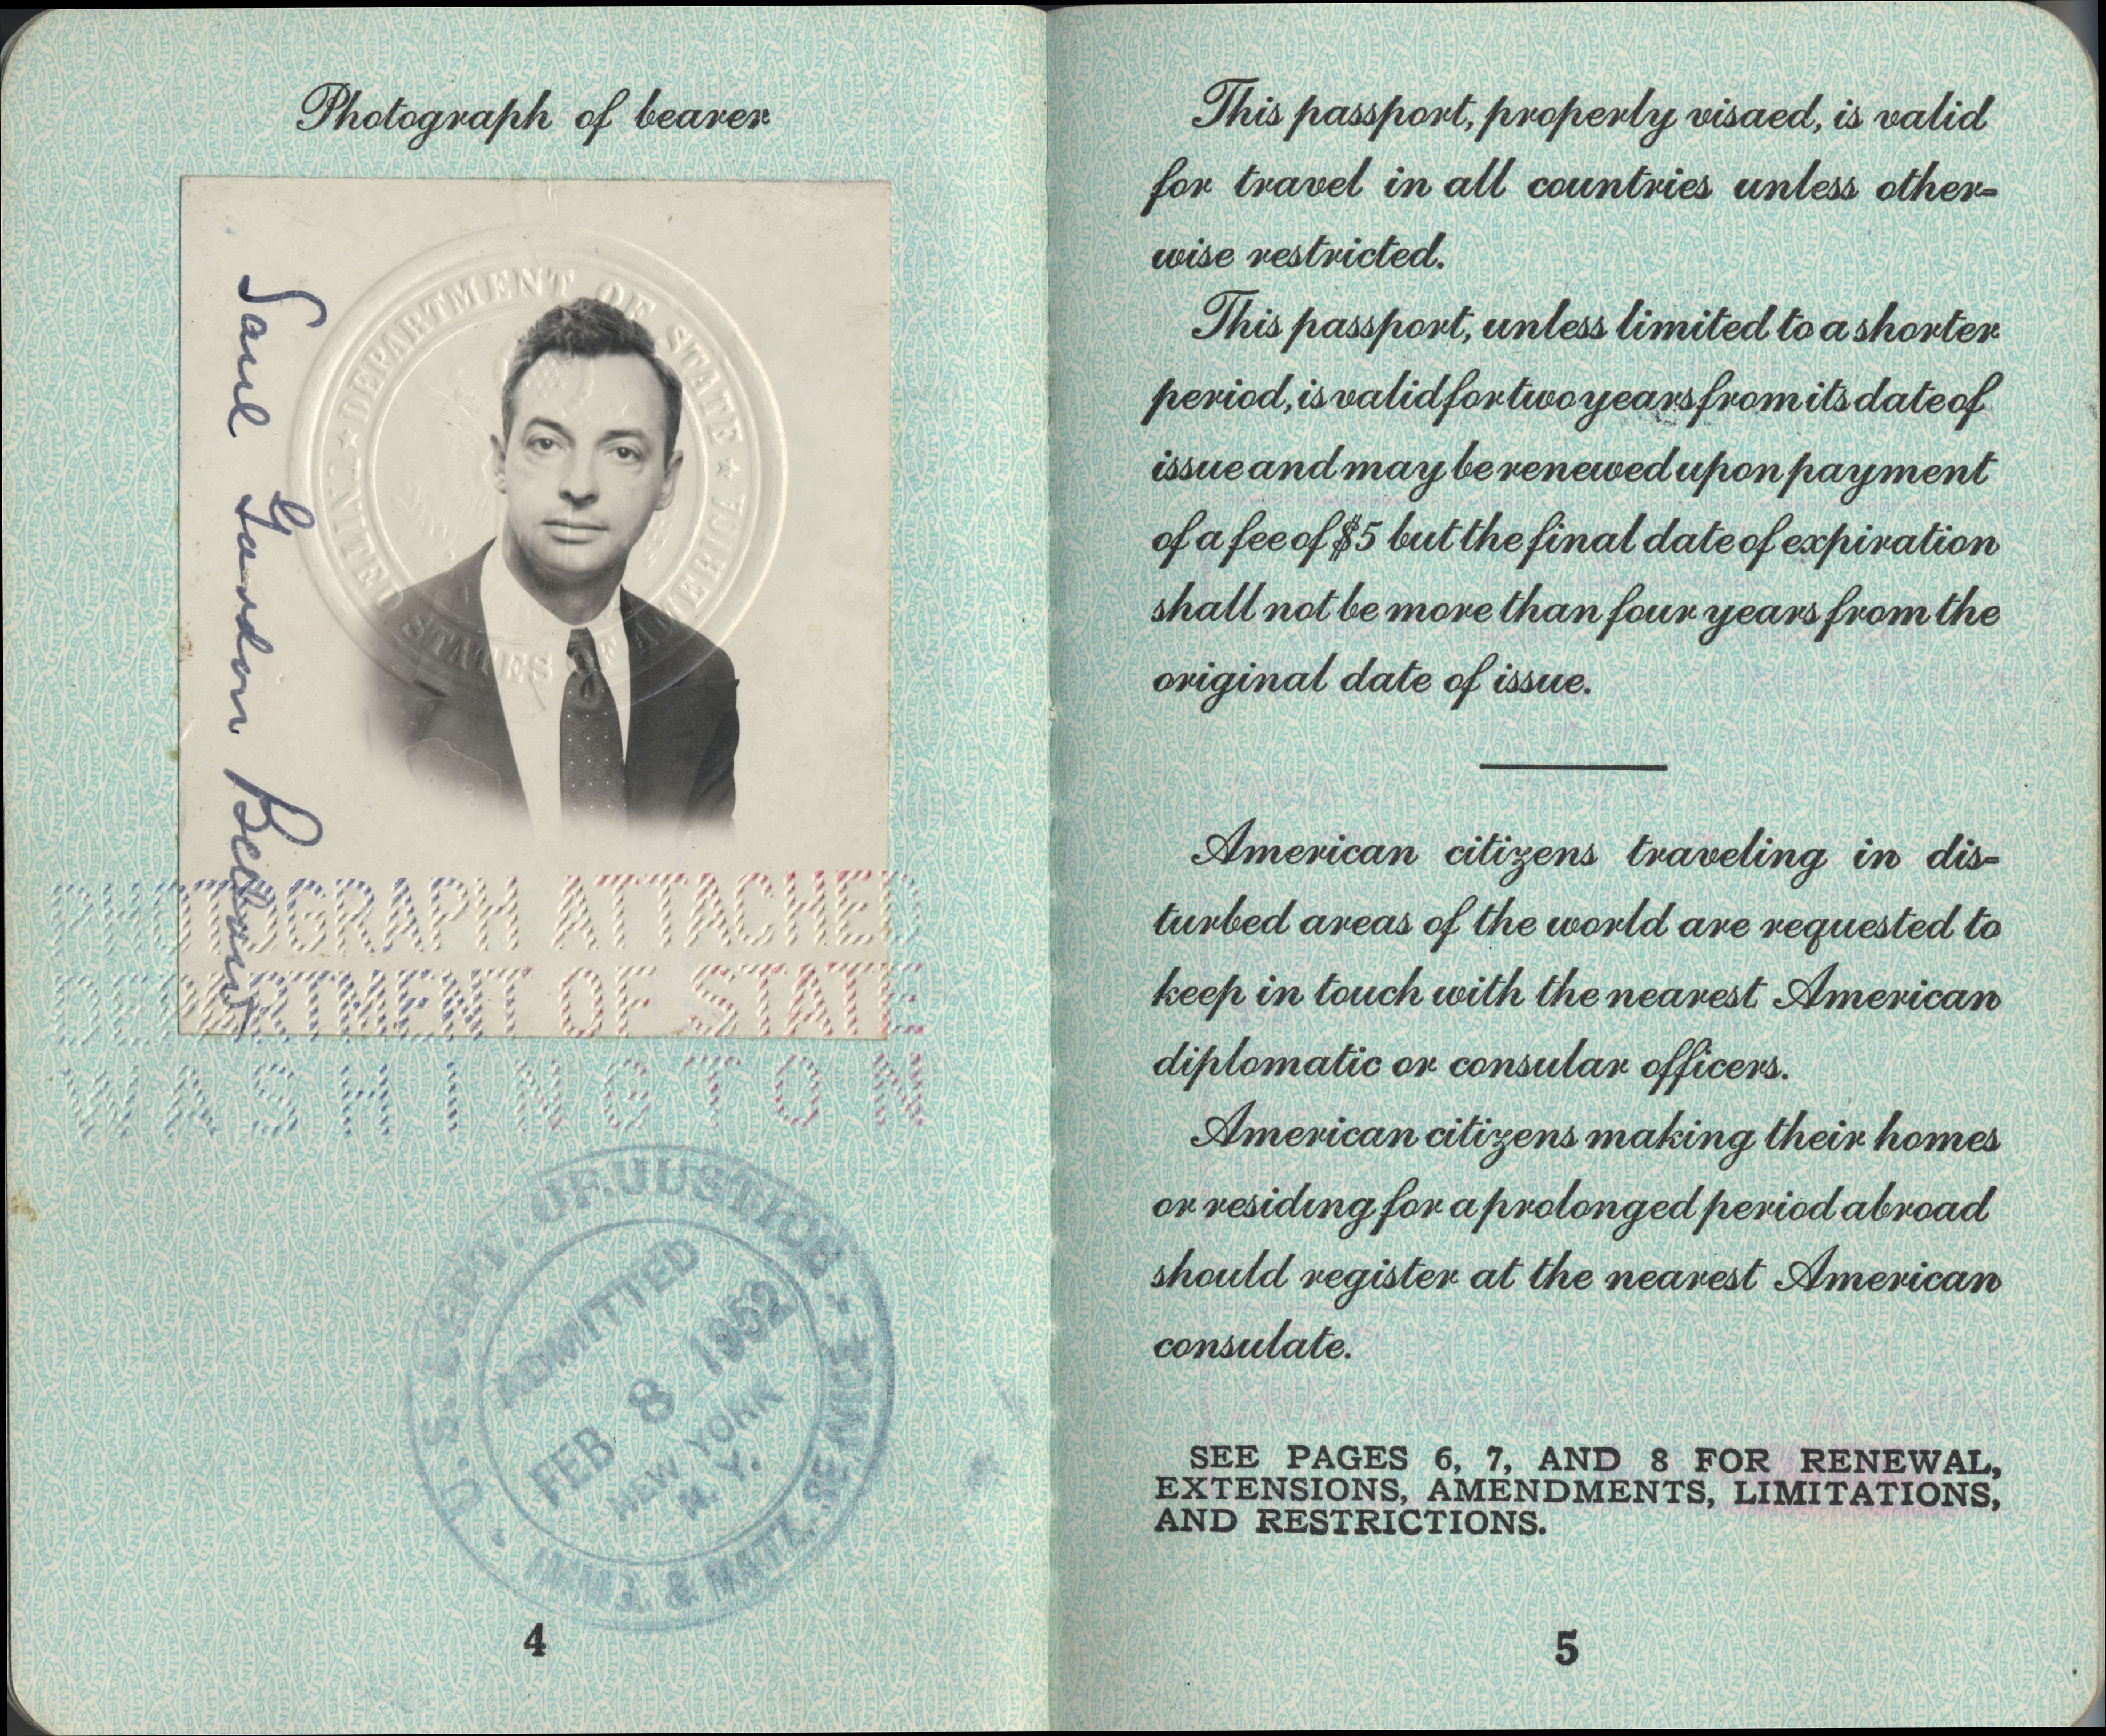 The U.S. passport of Saul Bellow